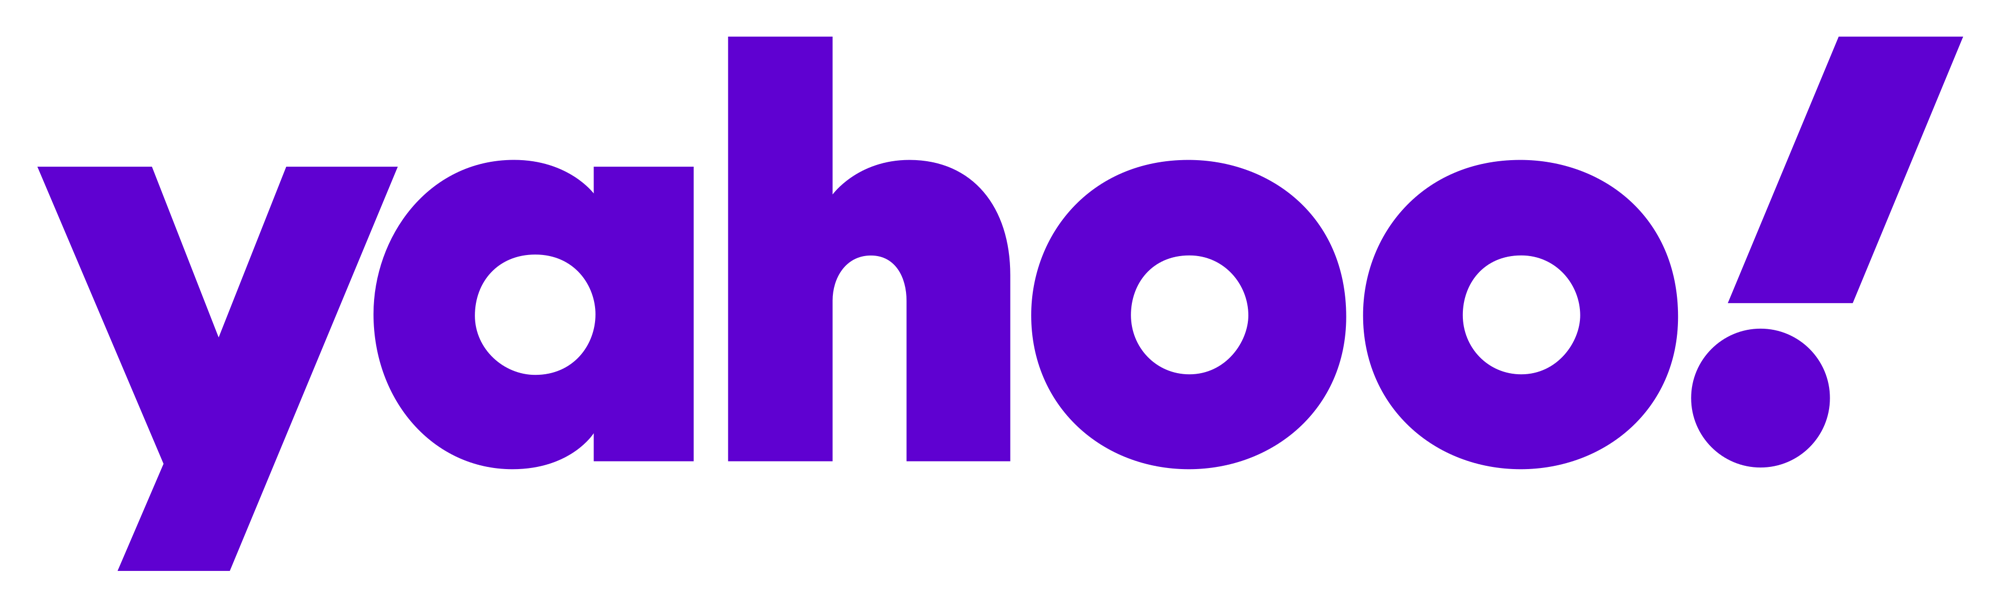 yahoo_2019_logo